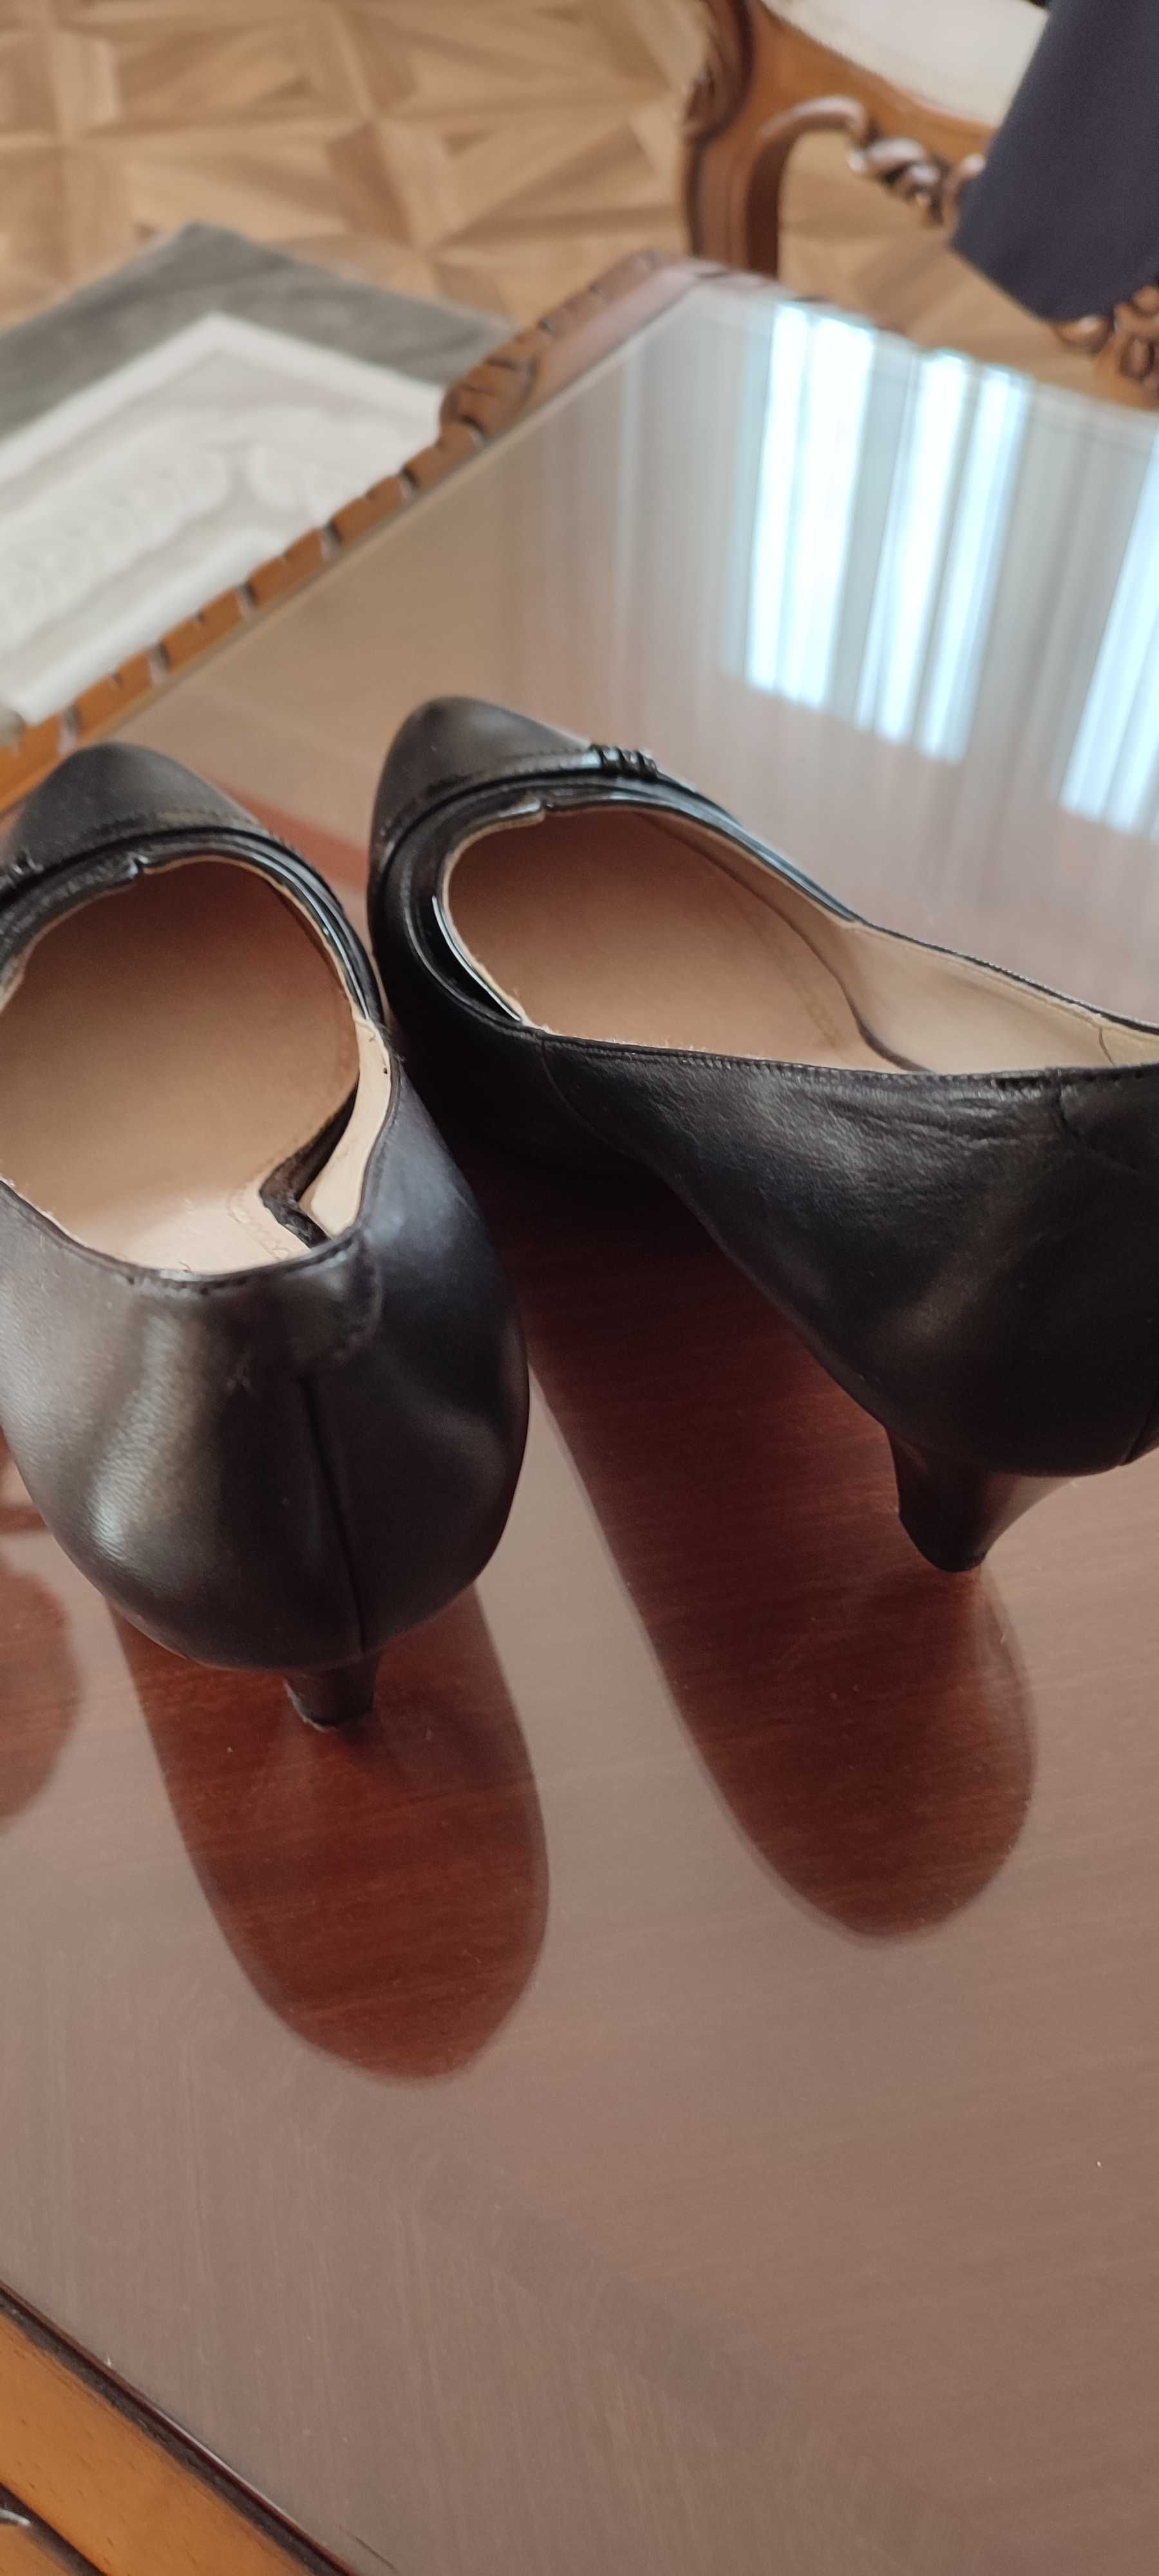 Pantofi eleganți din piele neagră,cu toc fin,comozi, mărimea 38